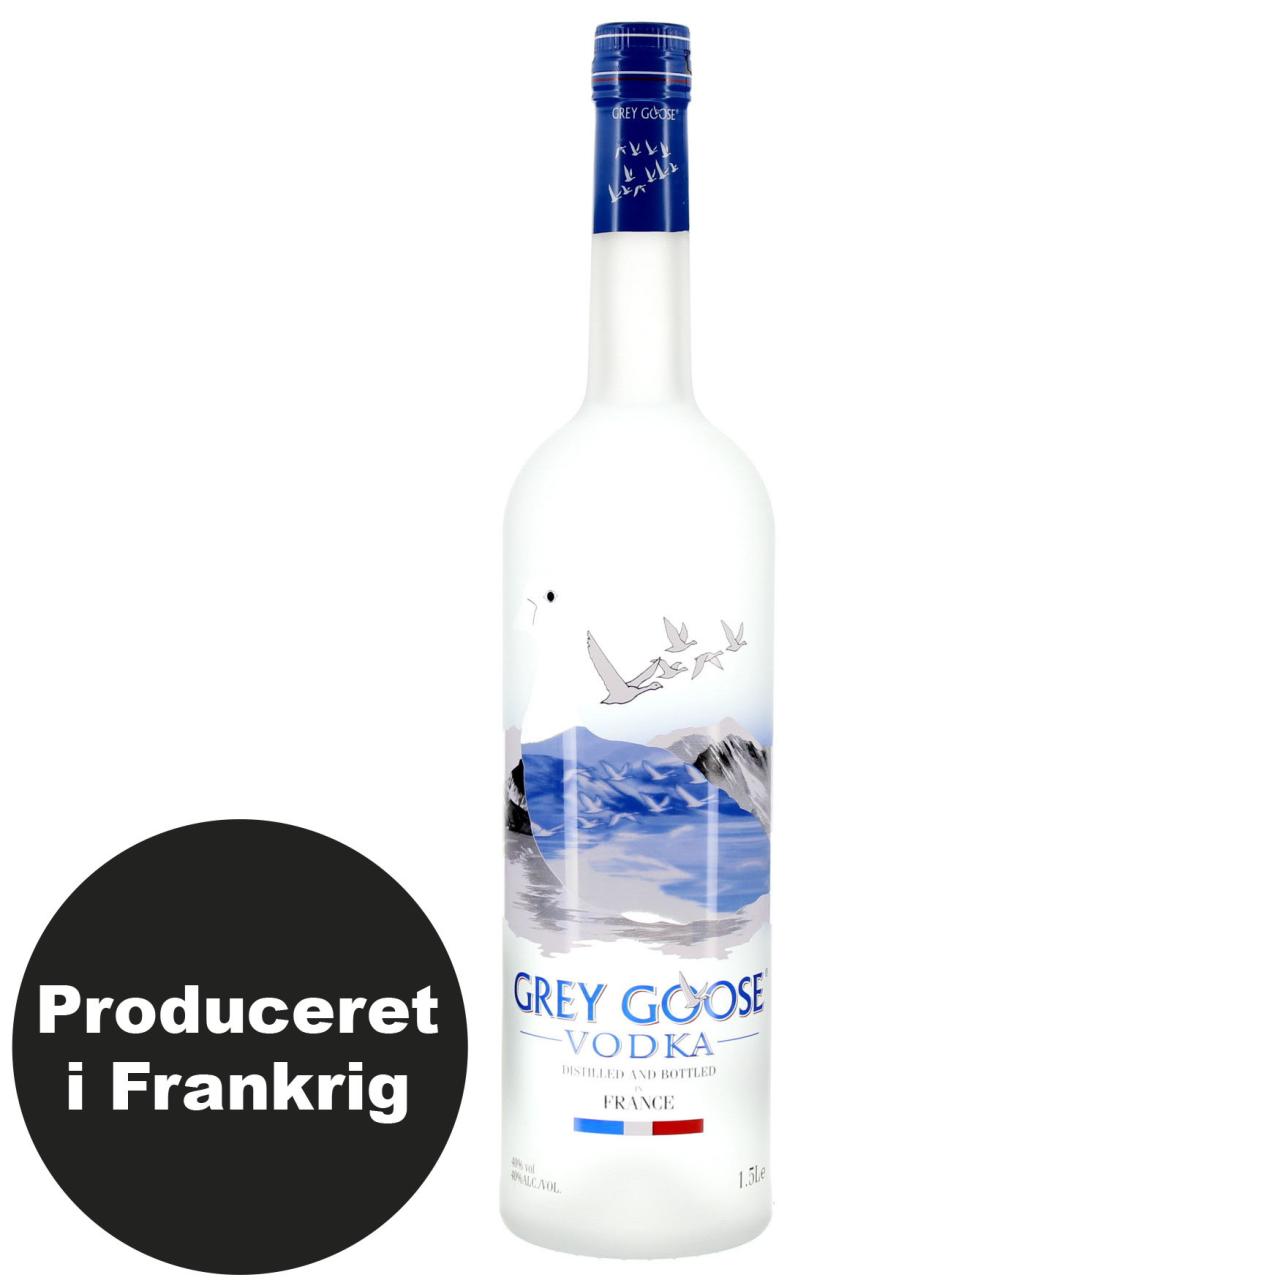 Grey Goose Vodka 40% 1,5l